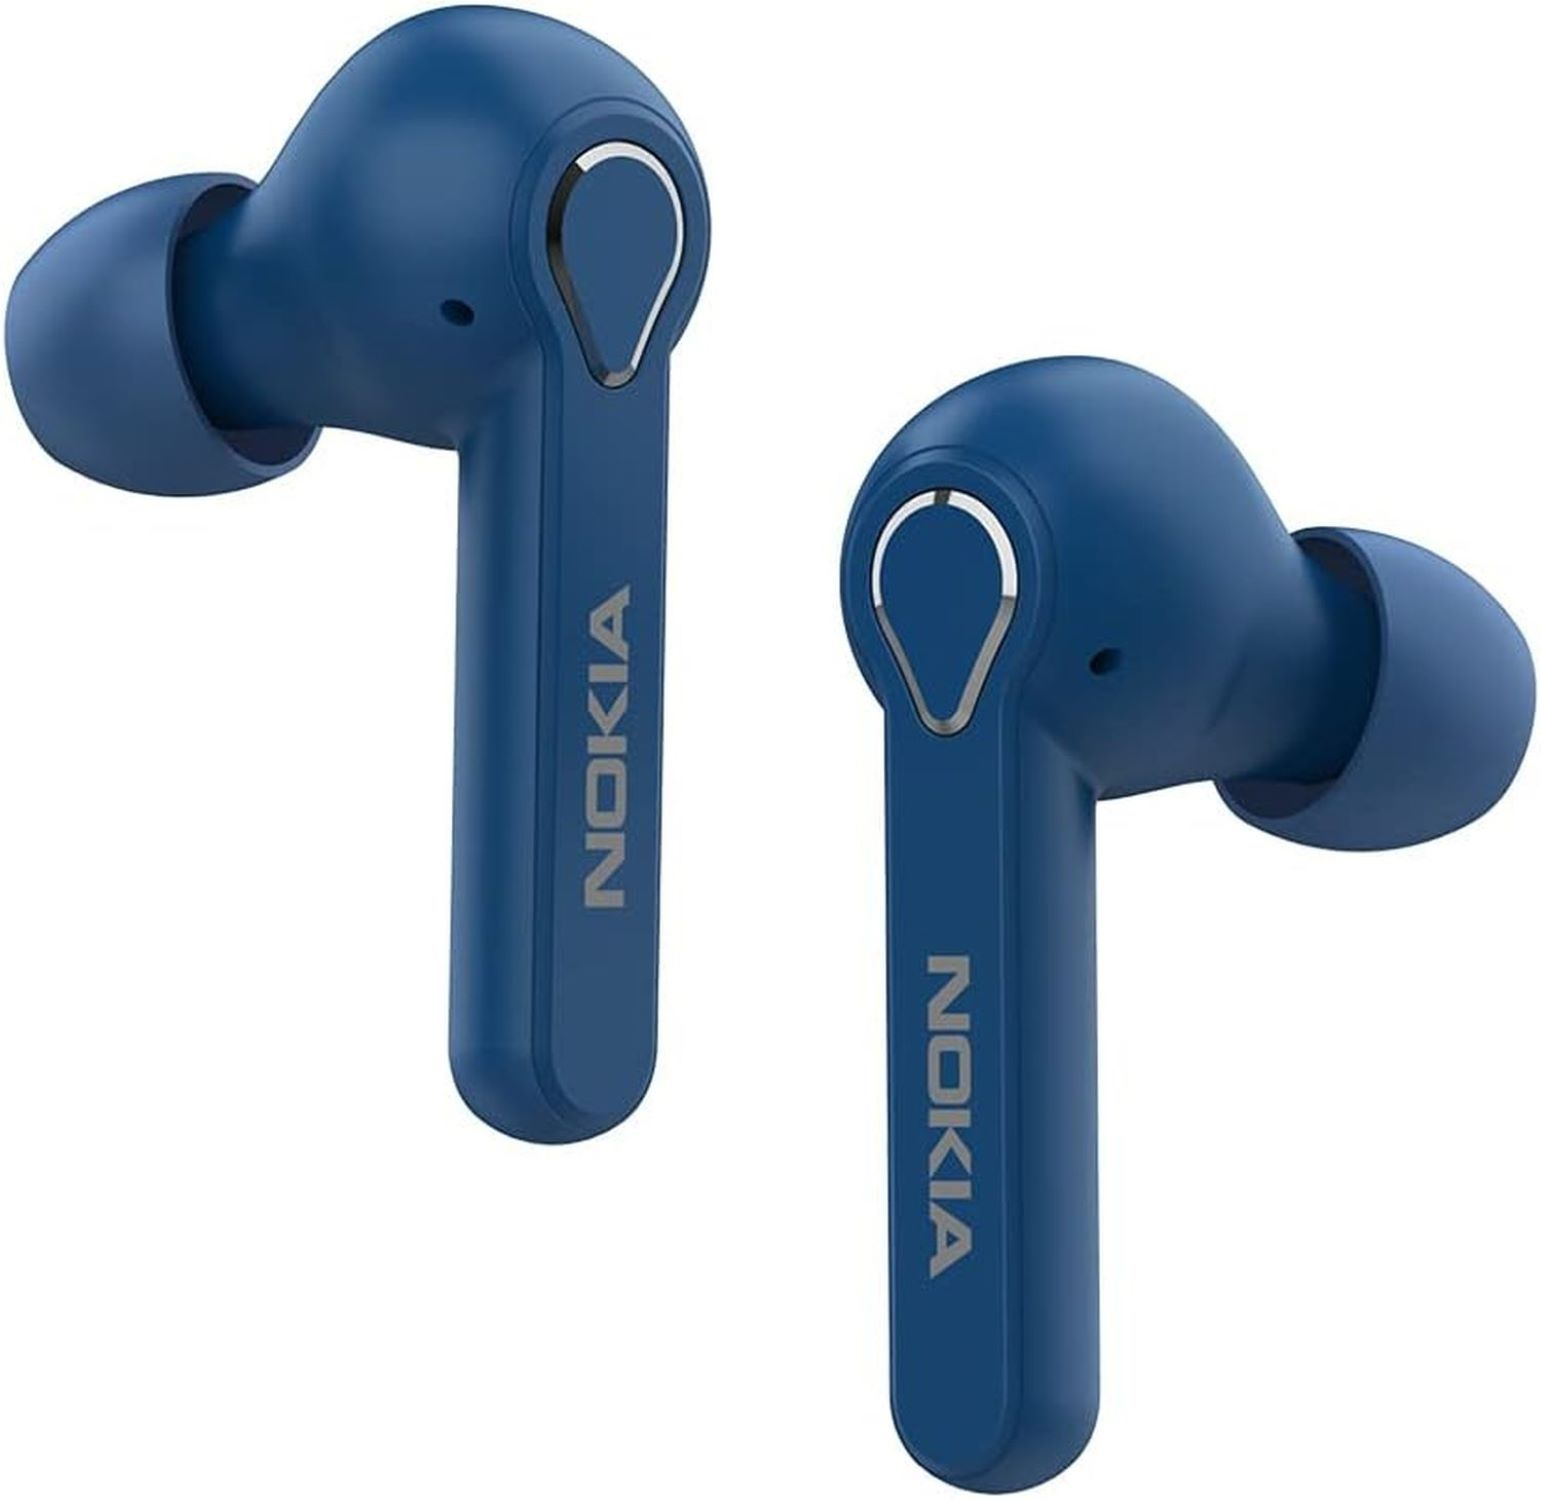 BH-205, Blau Bluetooth kopfhörer In-ear NOKIA